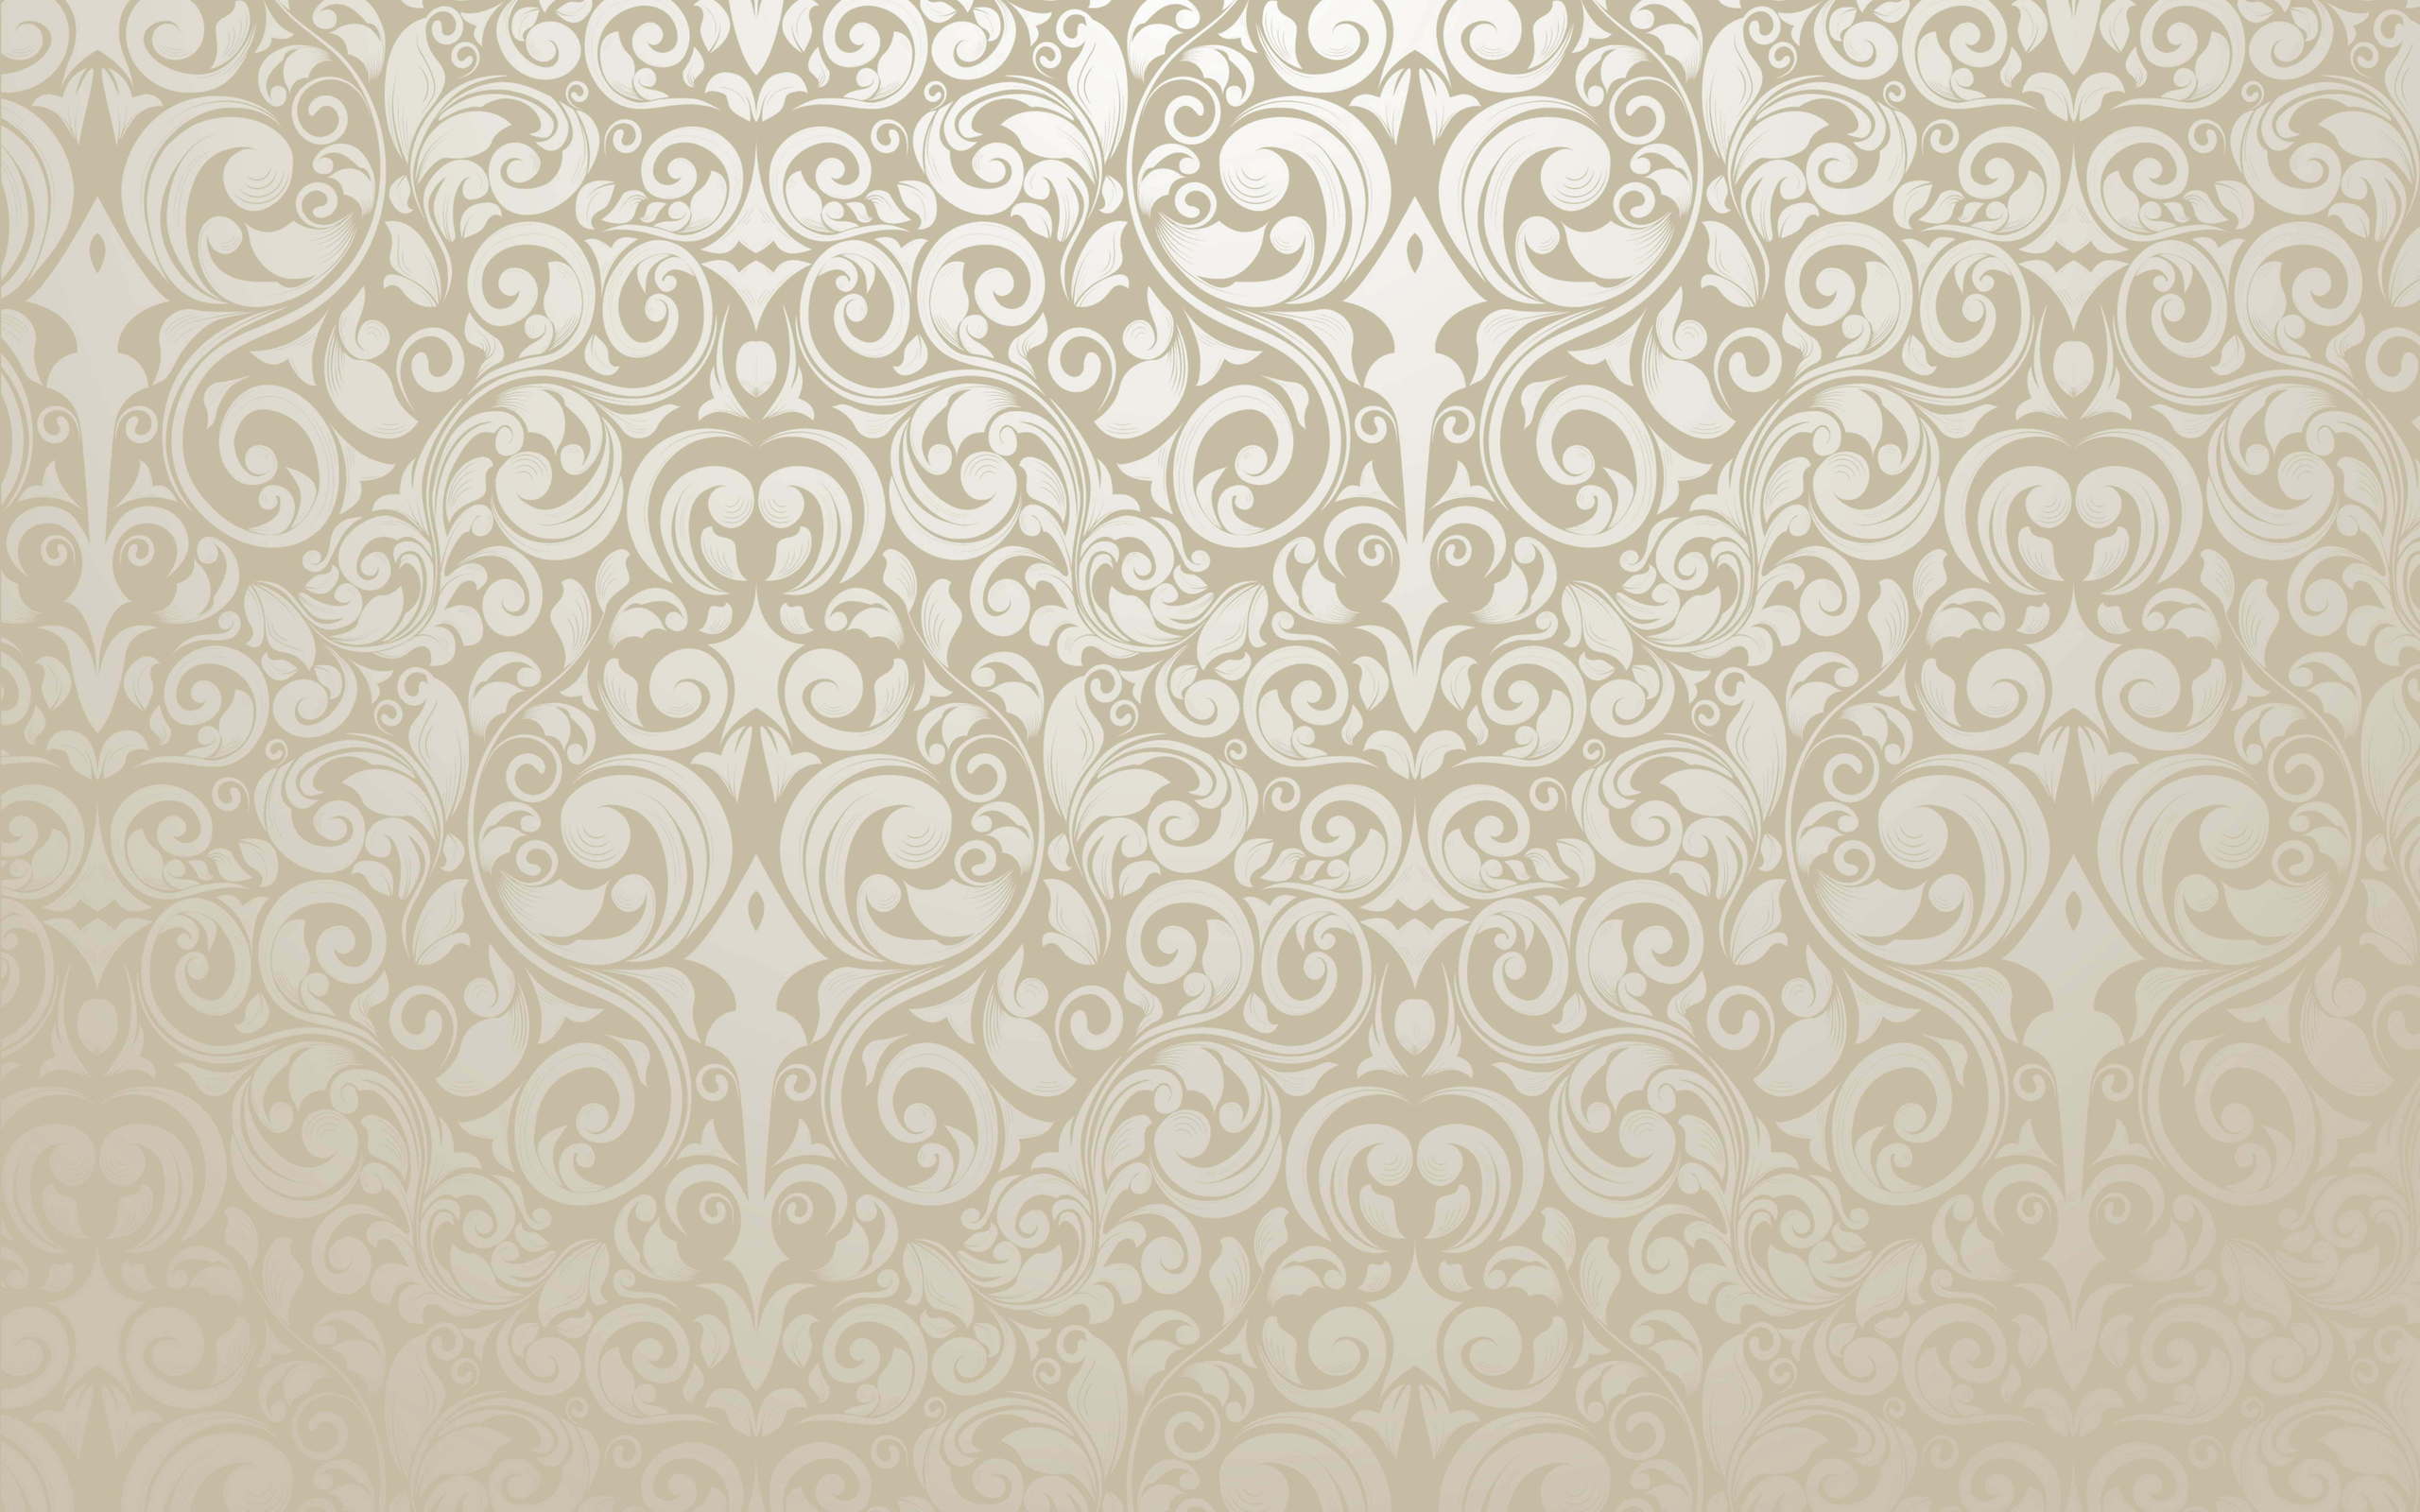 48+] Classic Wallpaper Patterns - WallpaperSafari